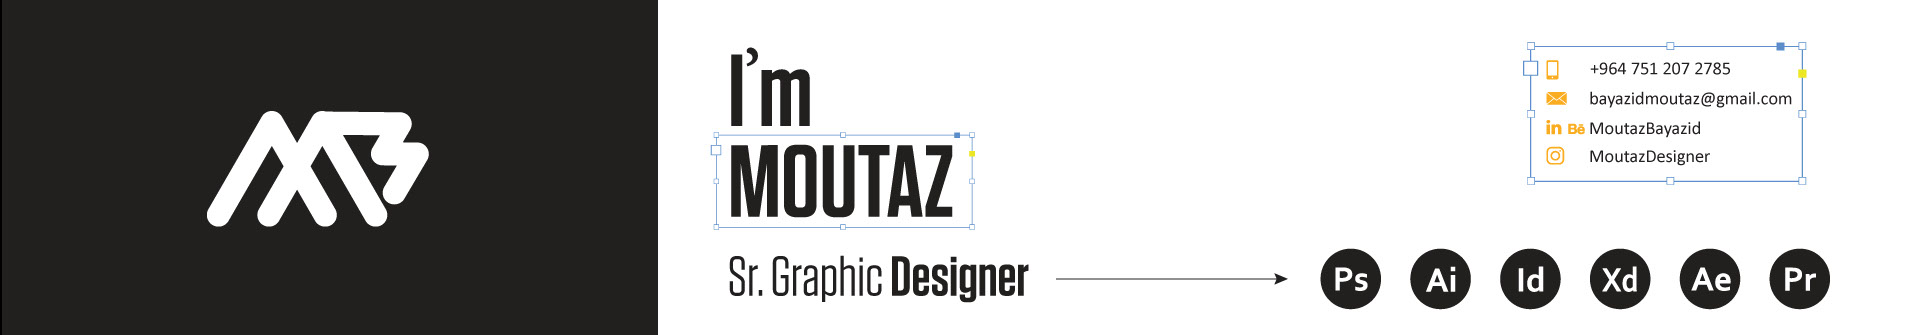 Banner profilu uživatele Moutaz Bayazid